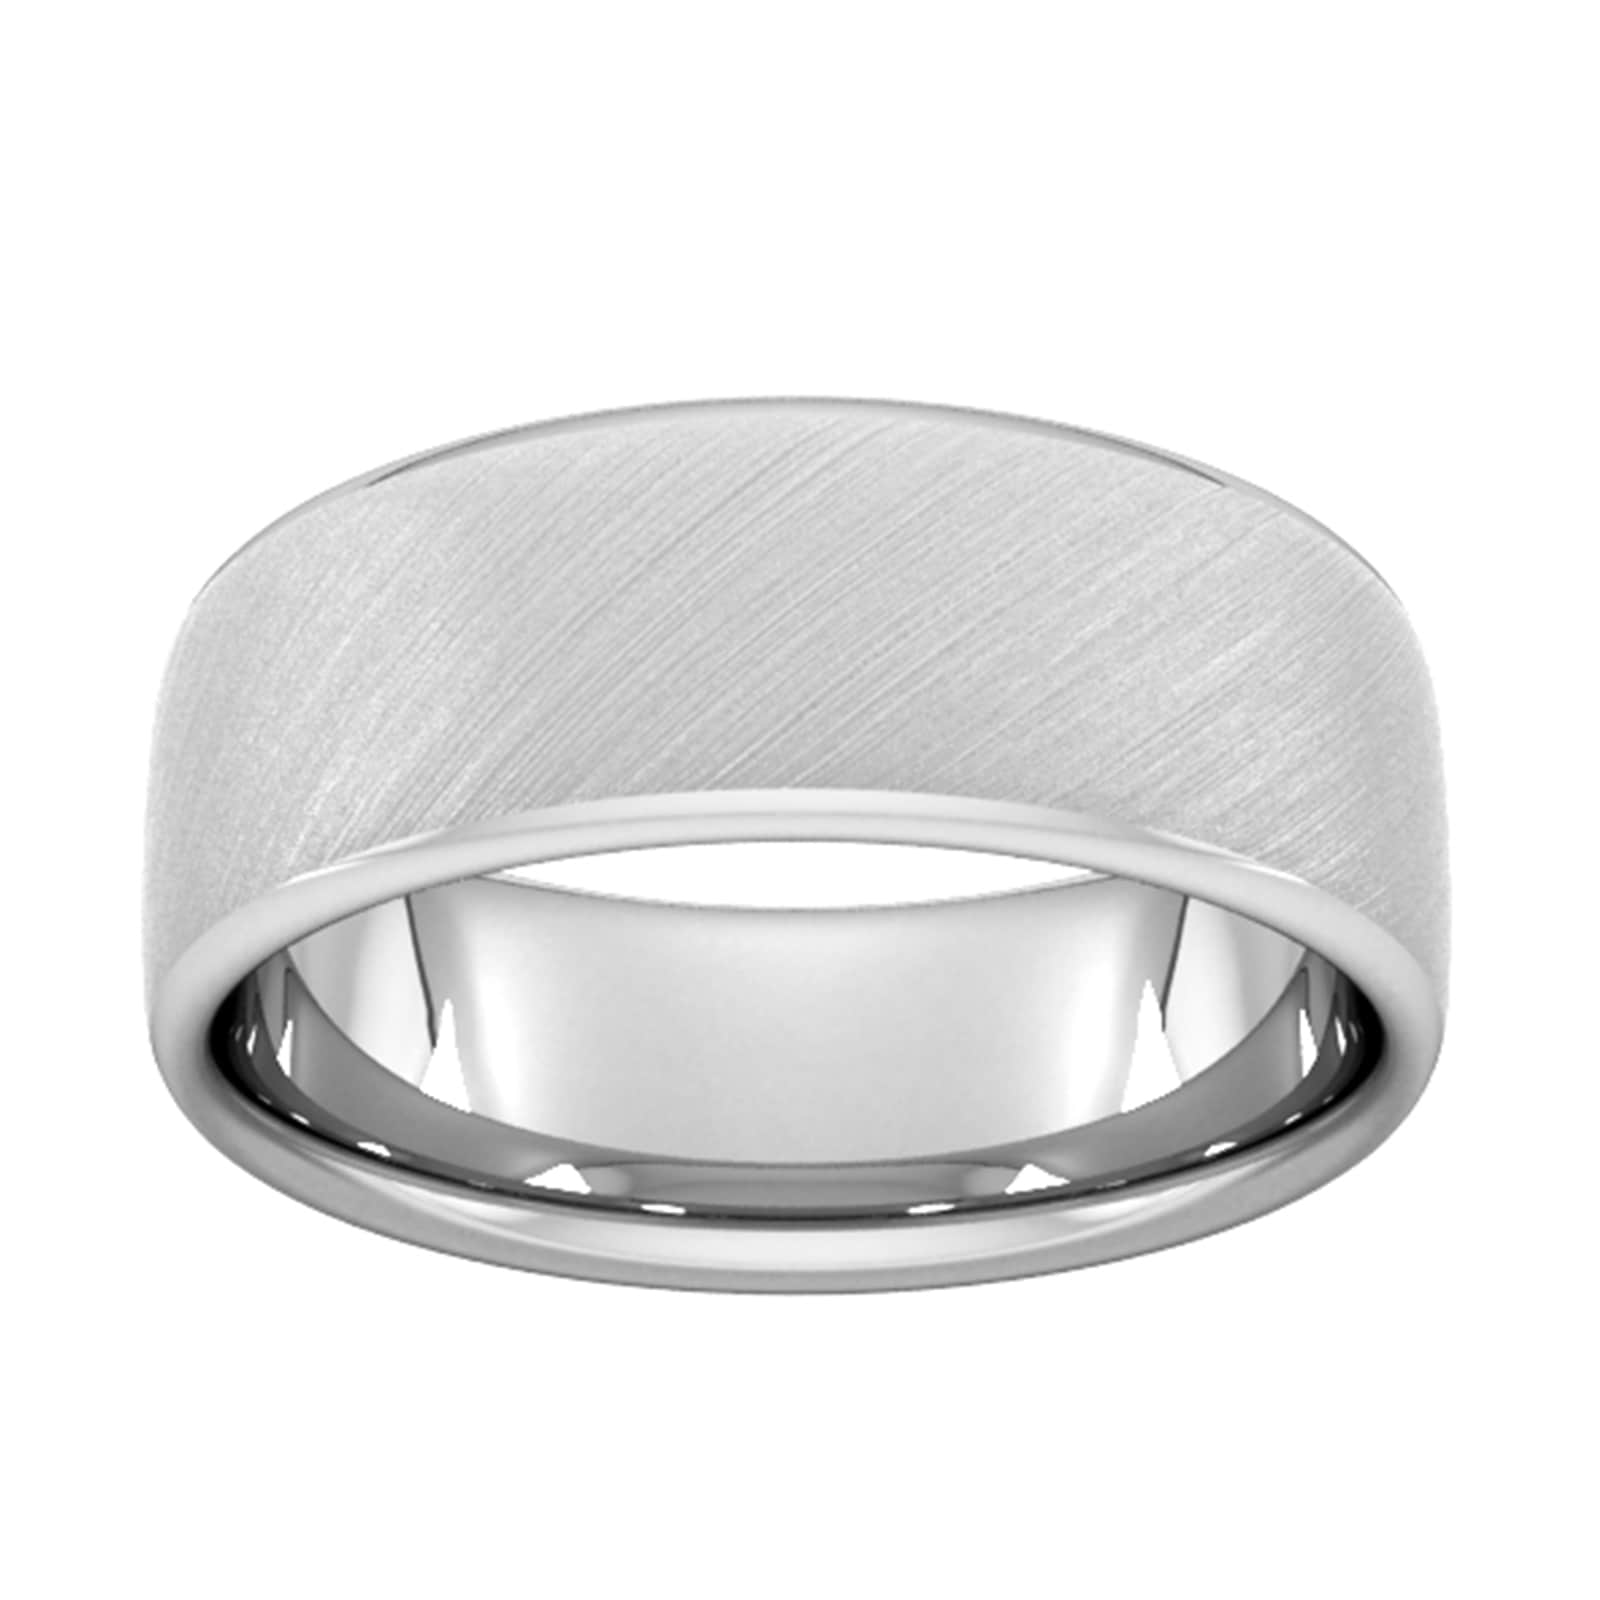 8mm Slight Court Standard Diagonal Matt Finish Wedding Ring In 950 Palladium - Ring Size N